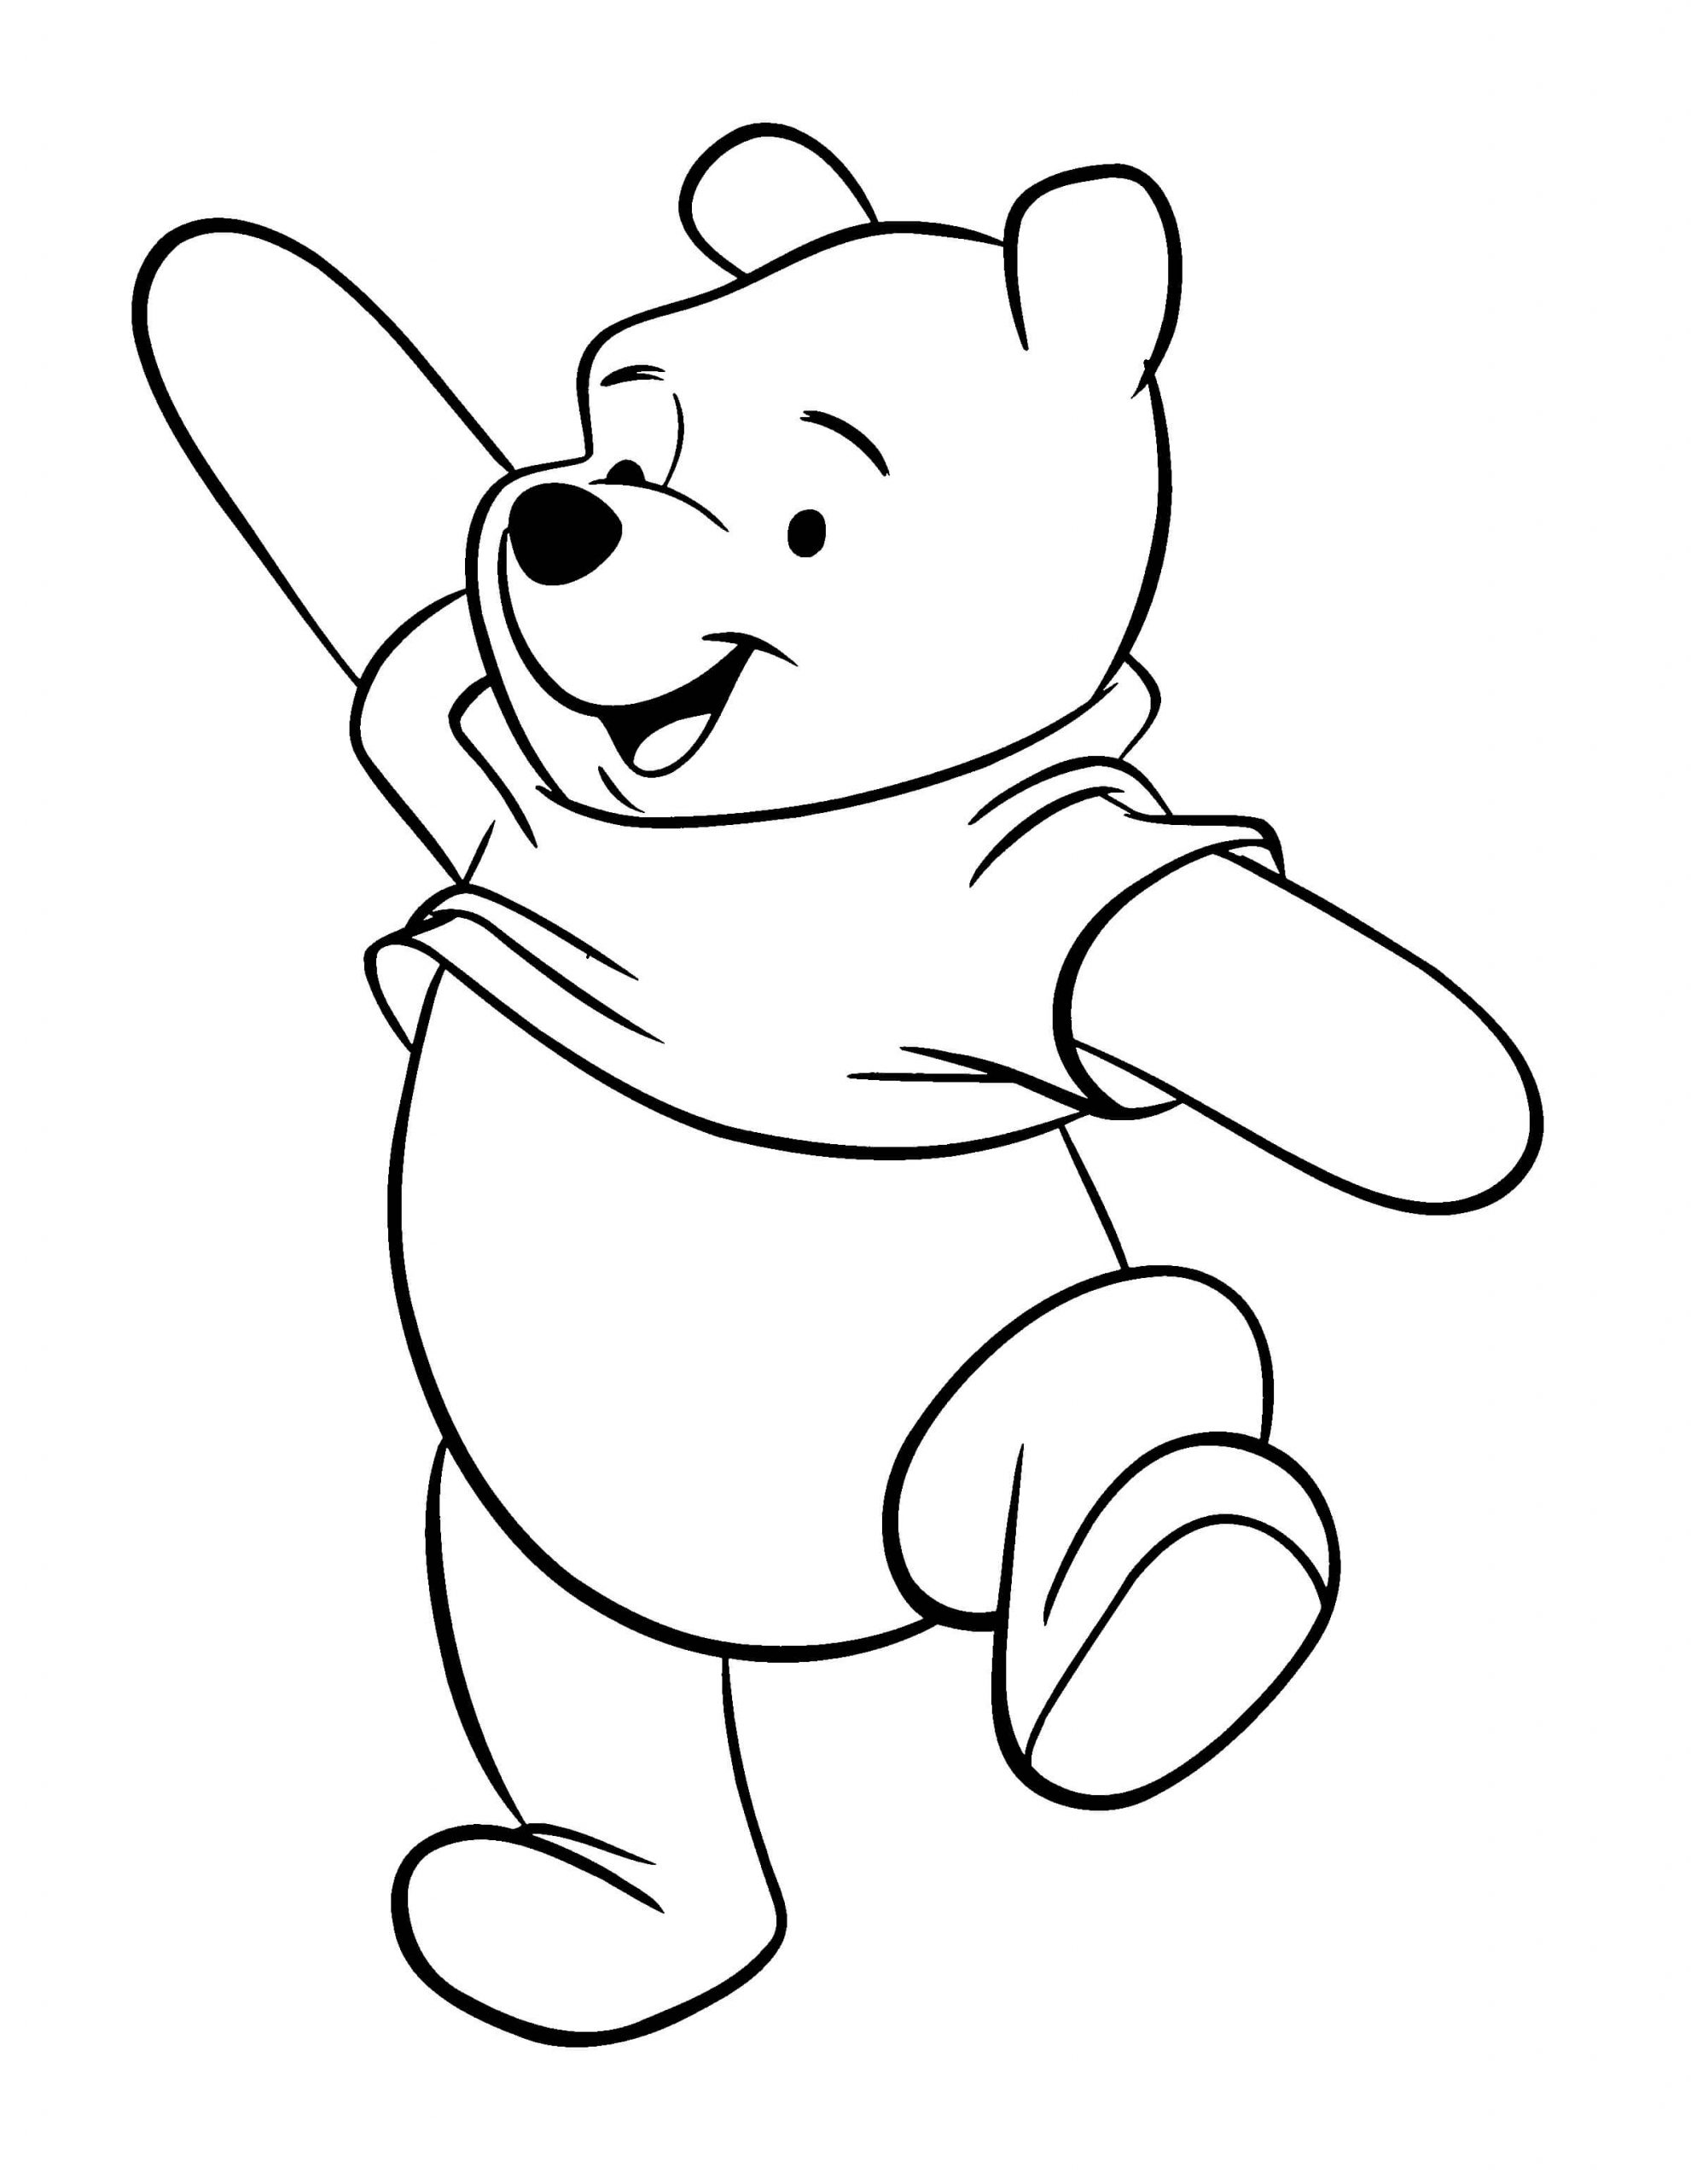 Divertido Ursinho Pooh para colorir